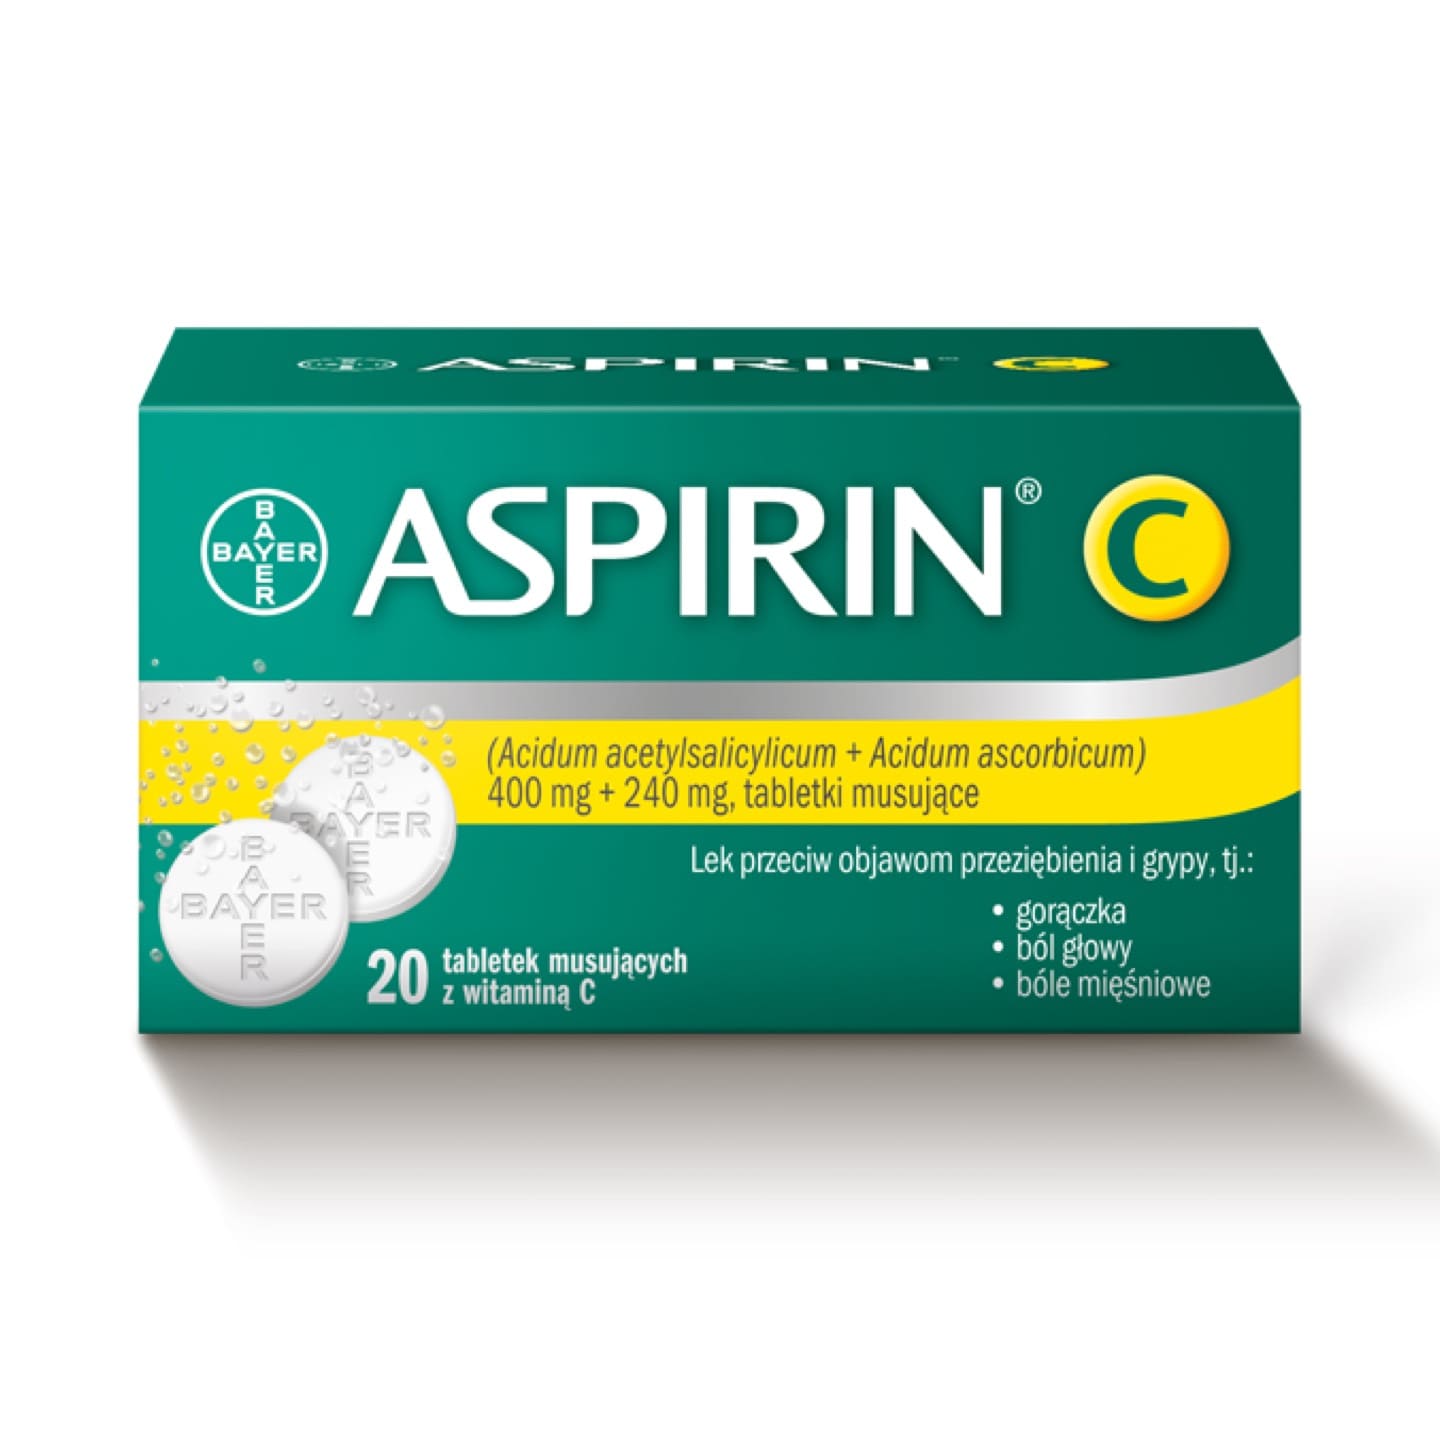 Aspirin® C lek na przeziębienie i grypę